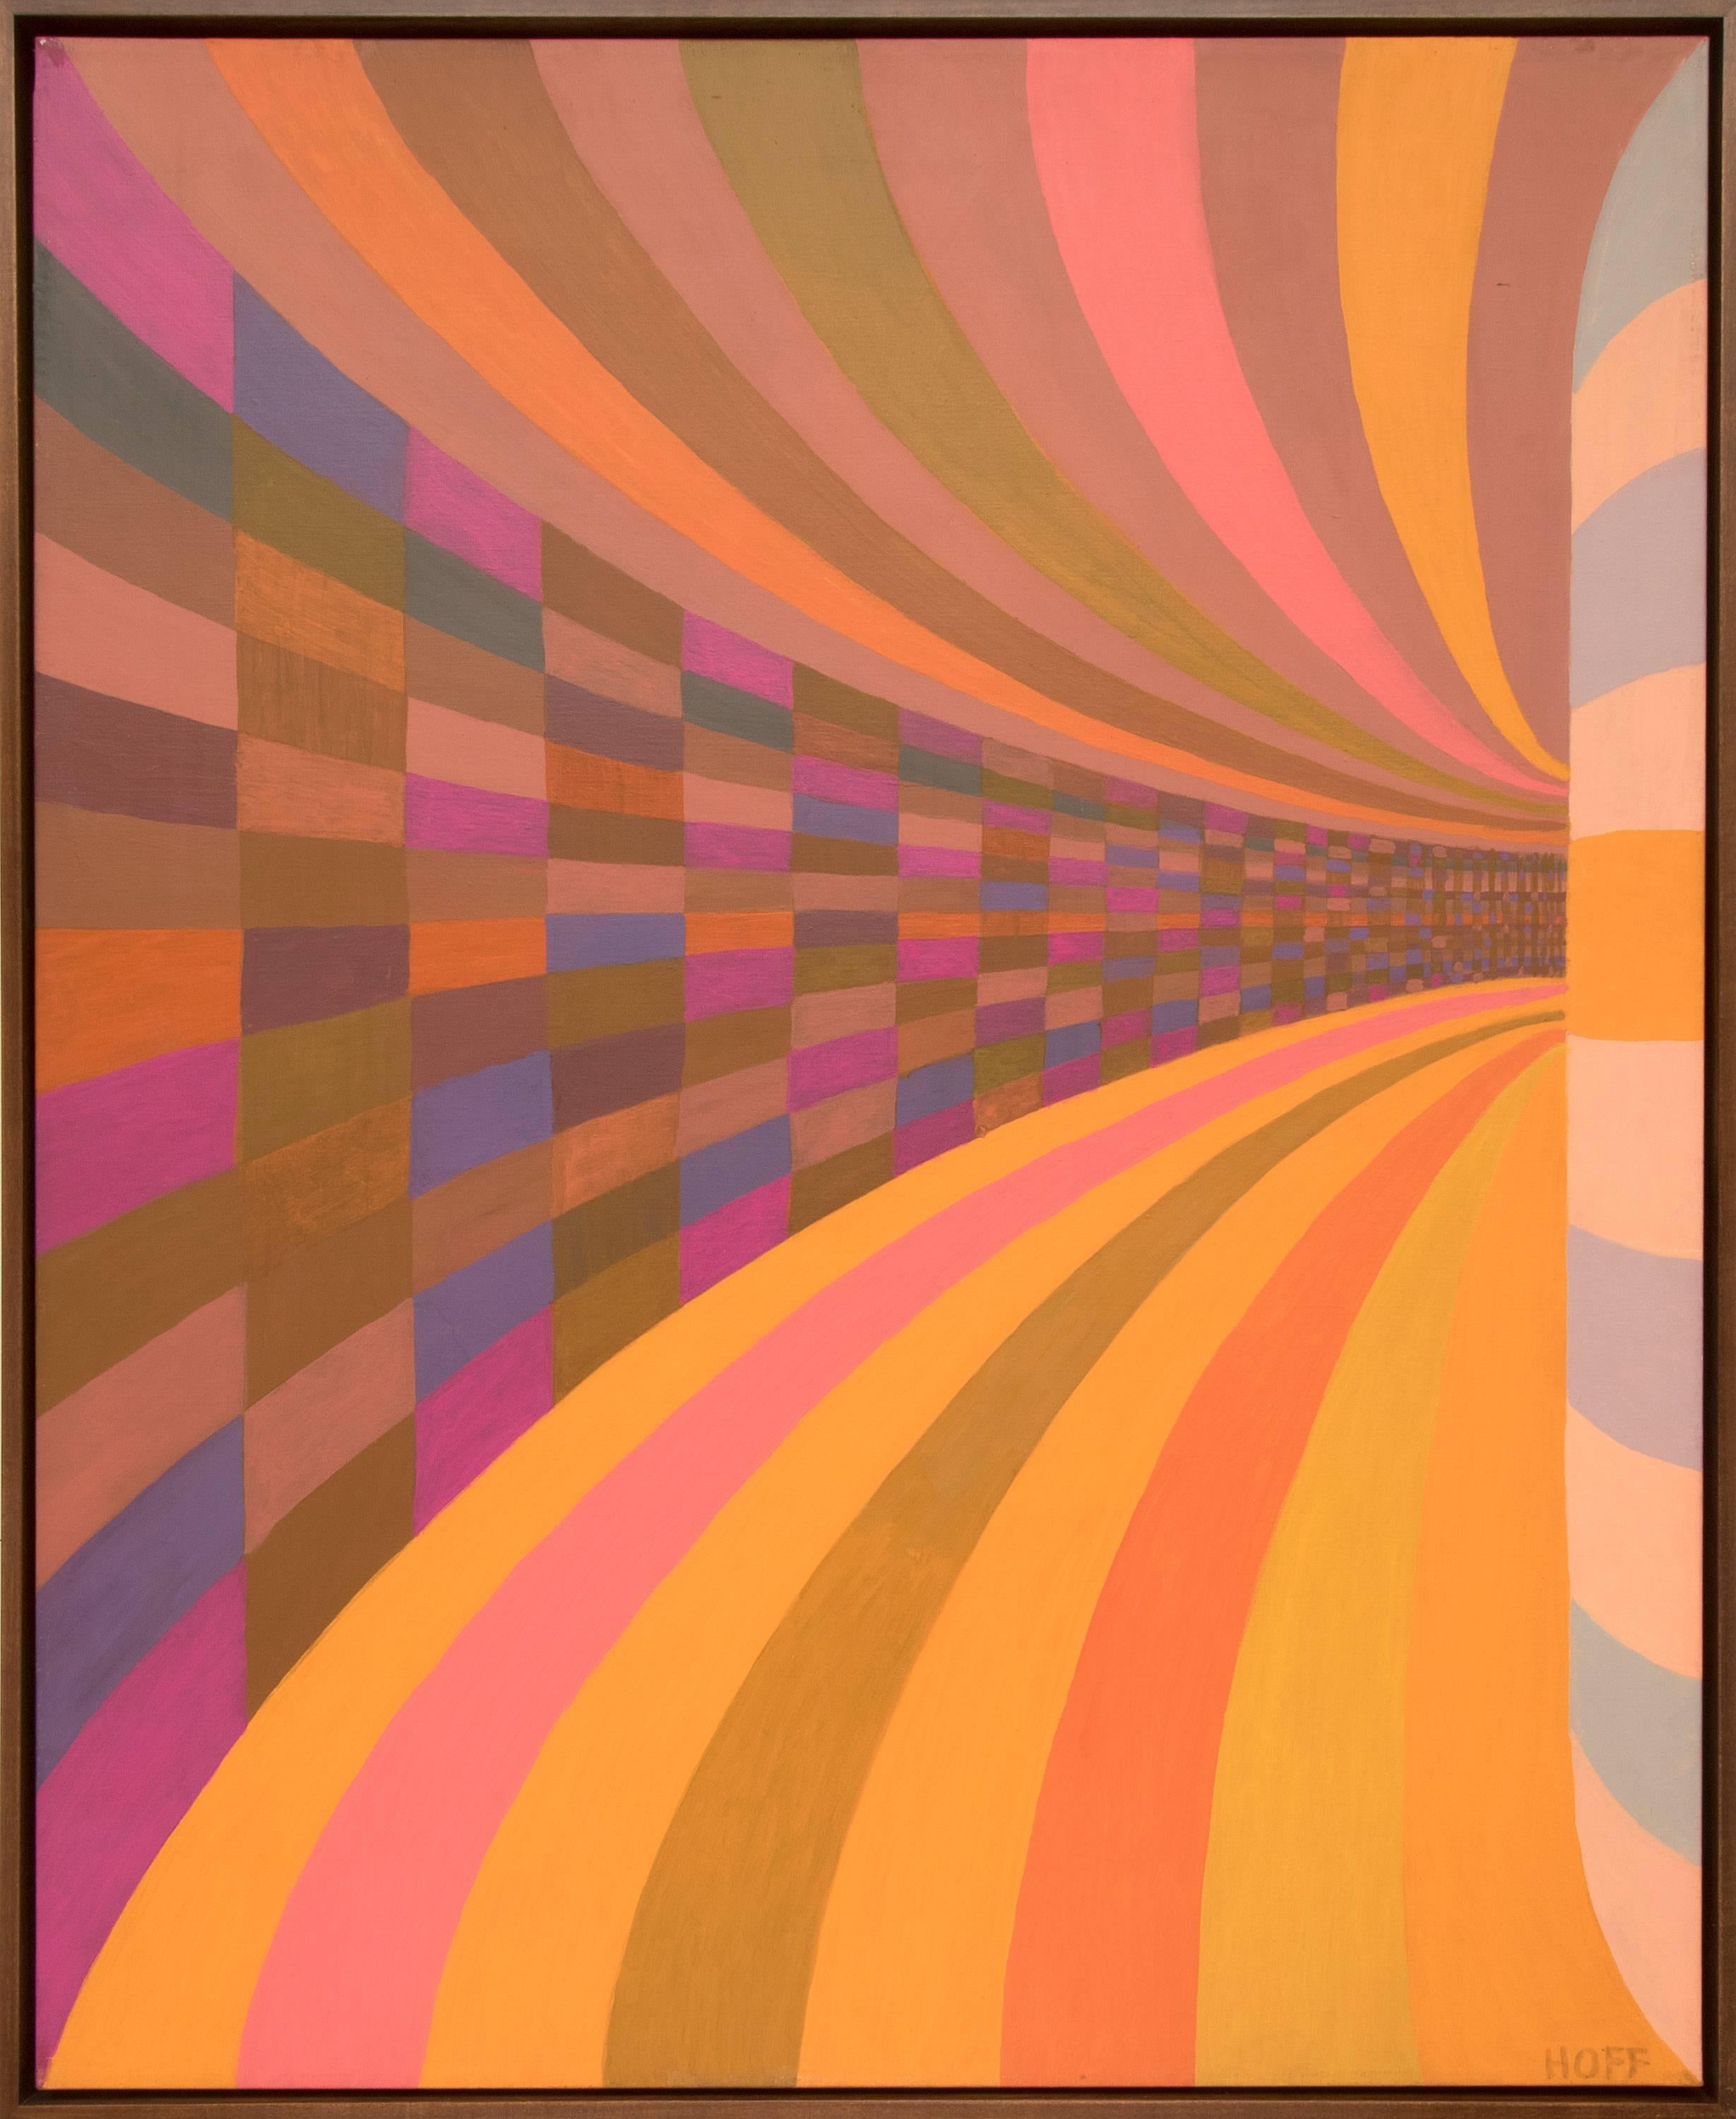 Abstract Painting Margo Hoff - Tunnel de couleurs, peinture à l'huile géométrique abstraite colorée des années 1970, rose, orange, bleu